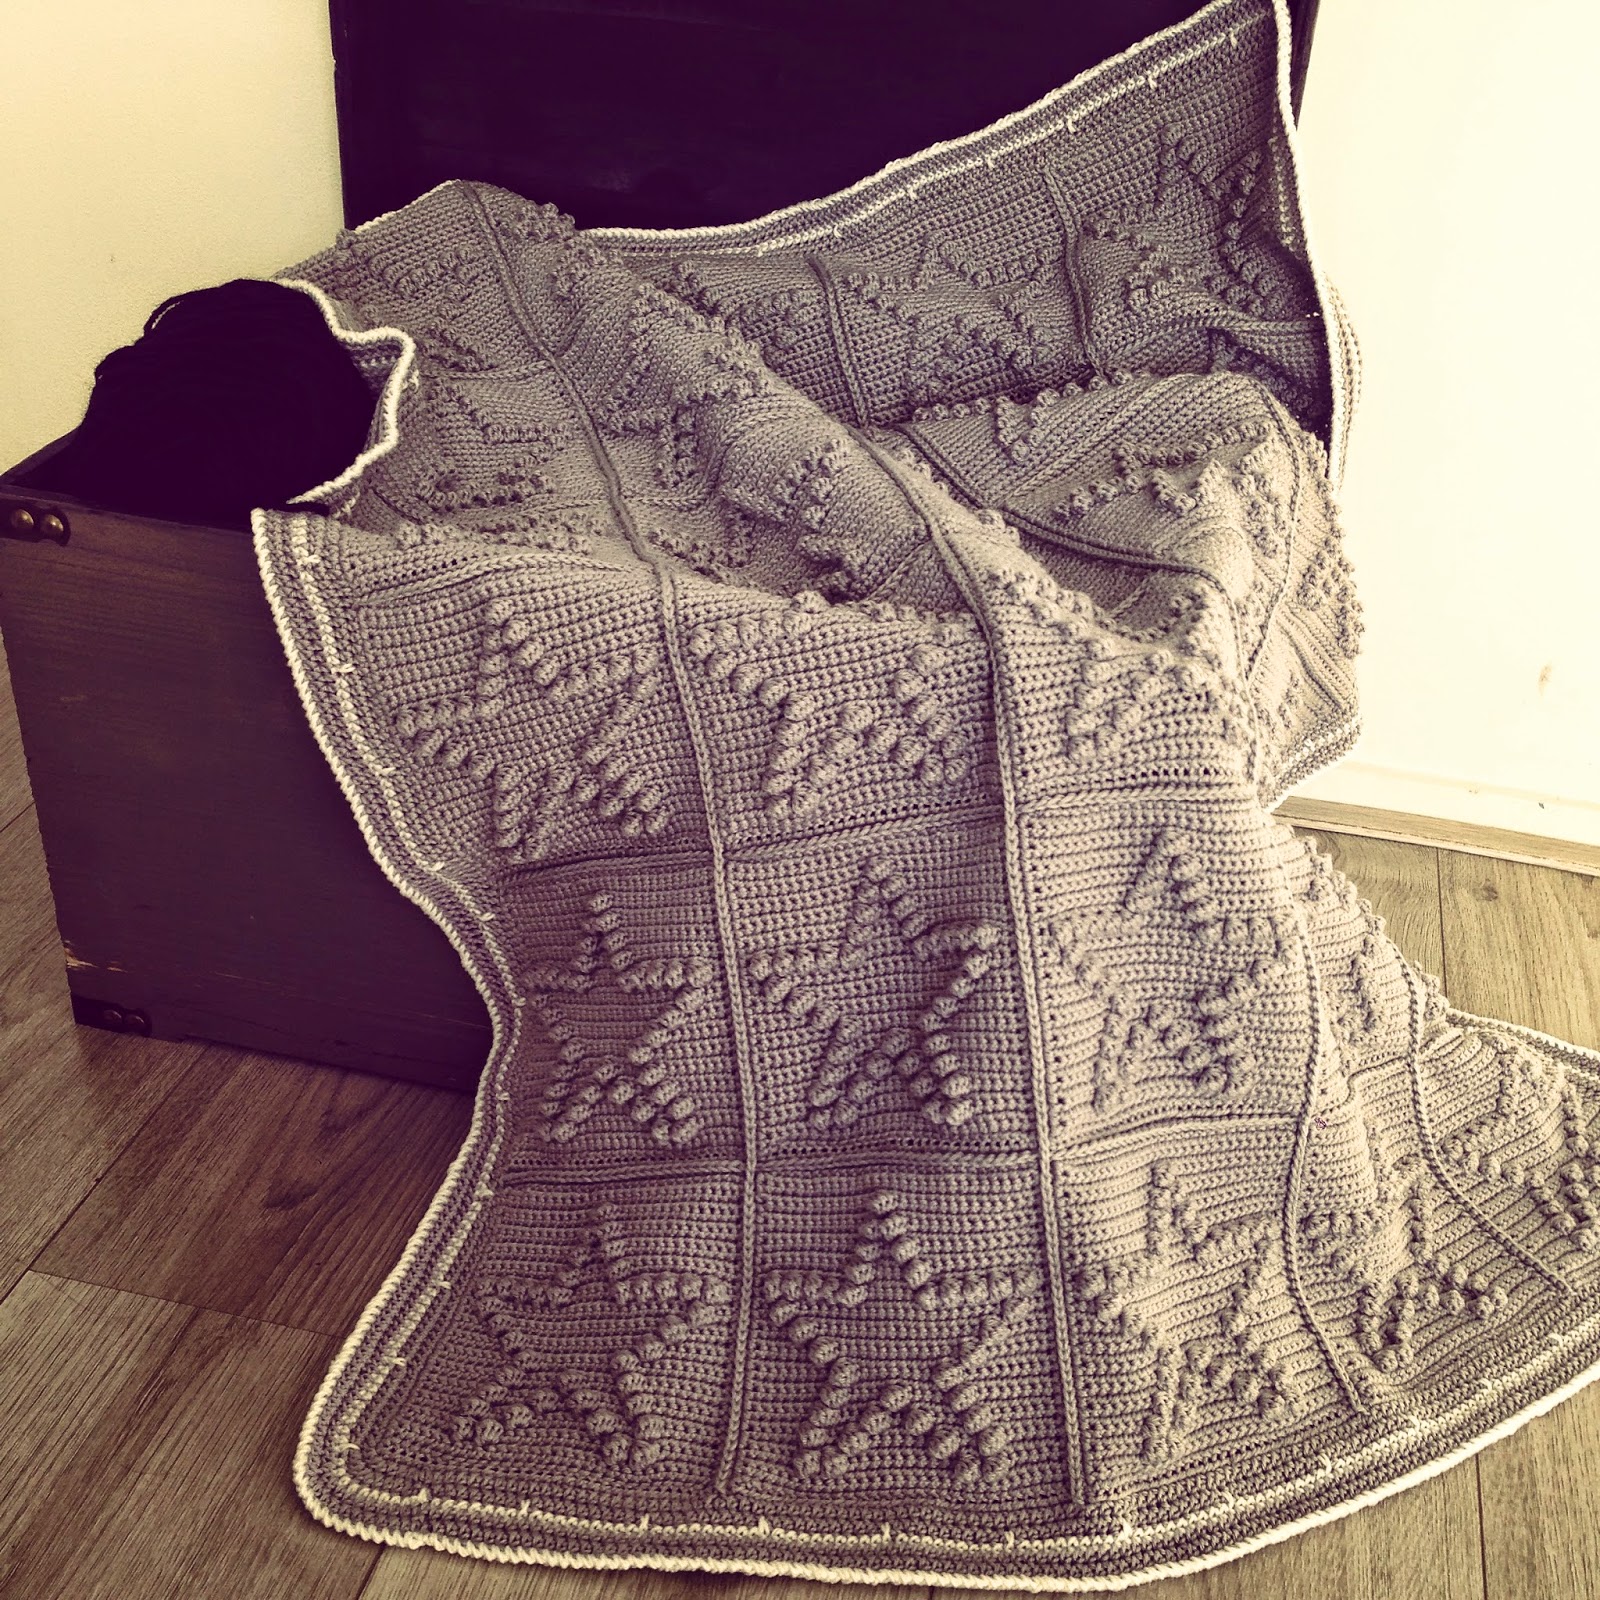 Koopje Machtig Graden Celsius Angels handmade: Bobble star blanket (met patroon!)